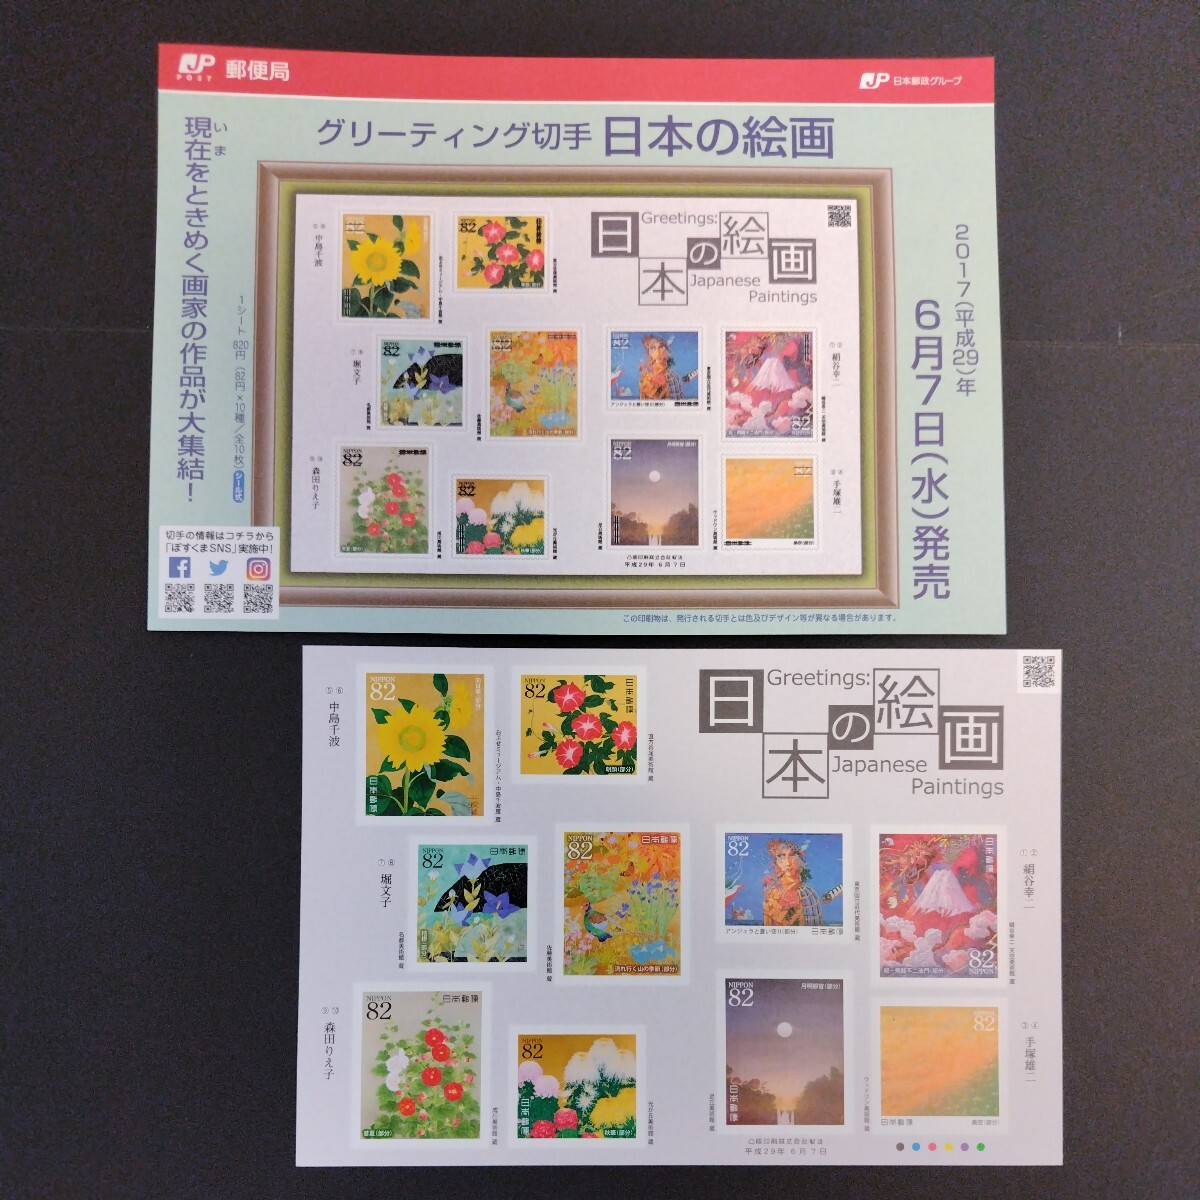 2017(平成29)年発行グリーティング切手(シール式)、「日本の絵画亅、82円10枚、1シート、額面820円。リーフレット付き。の画像1